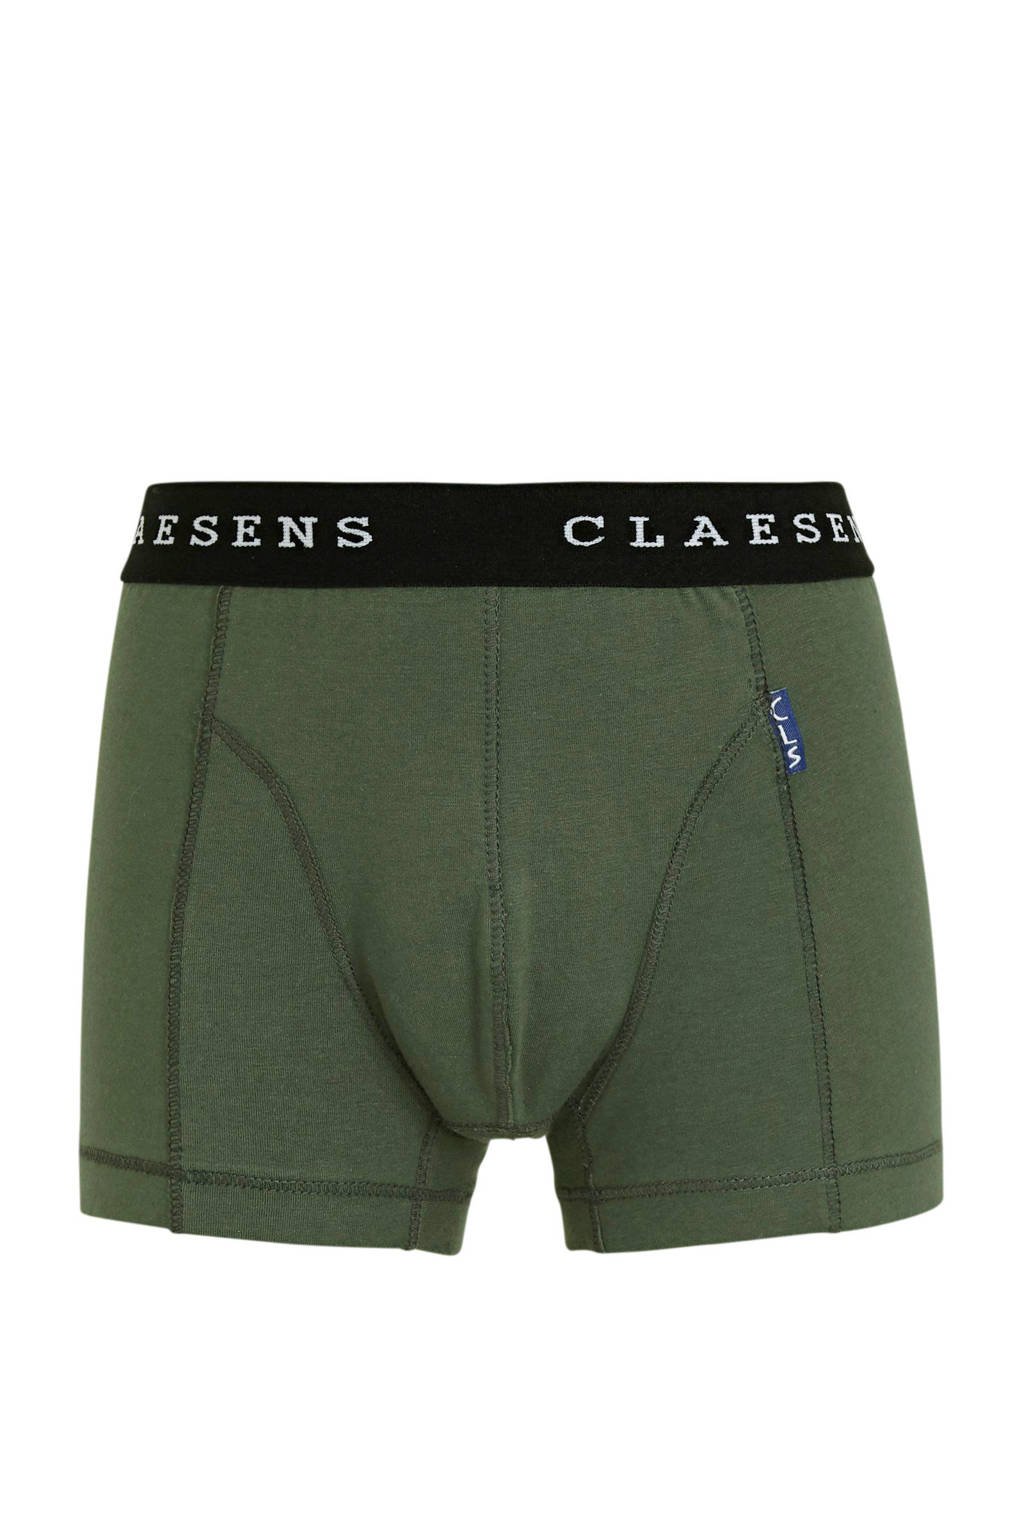 joggen Sherlock Holmes vaak Claesen's boxershort - set van 2 groen/zwart | wehkamp